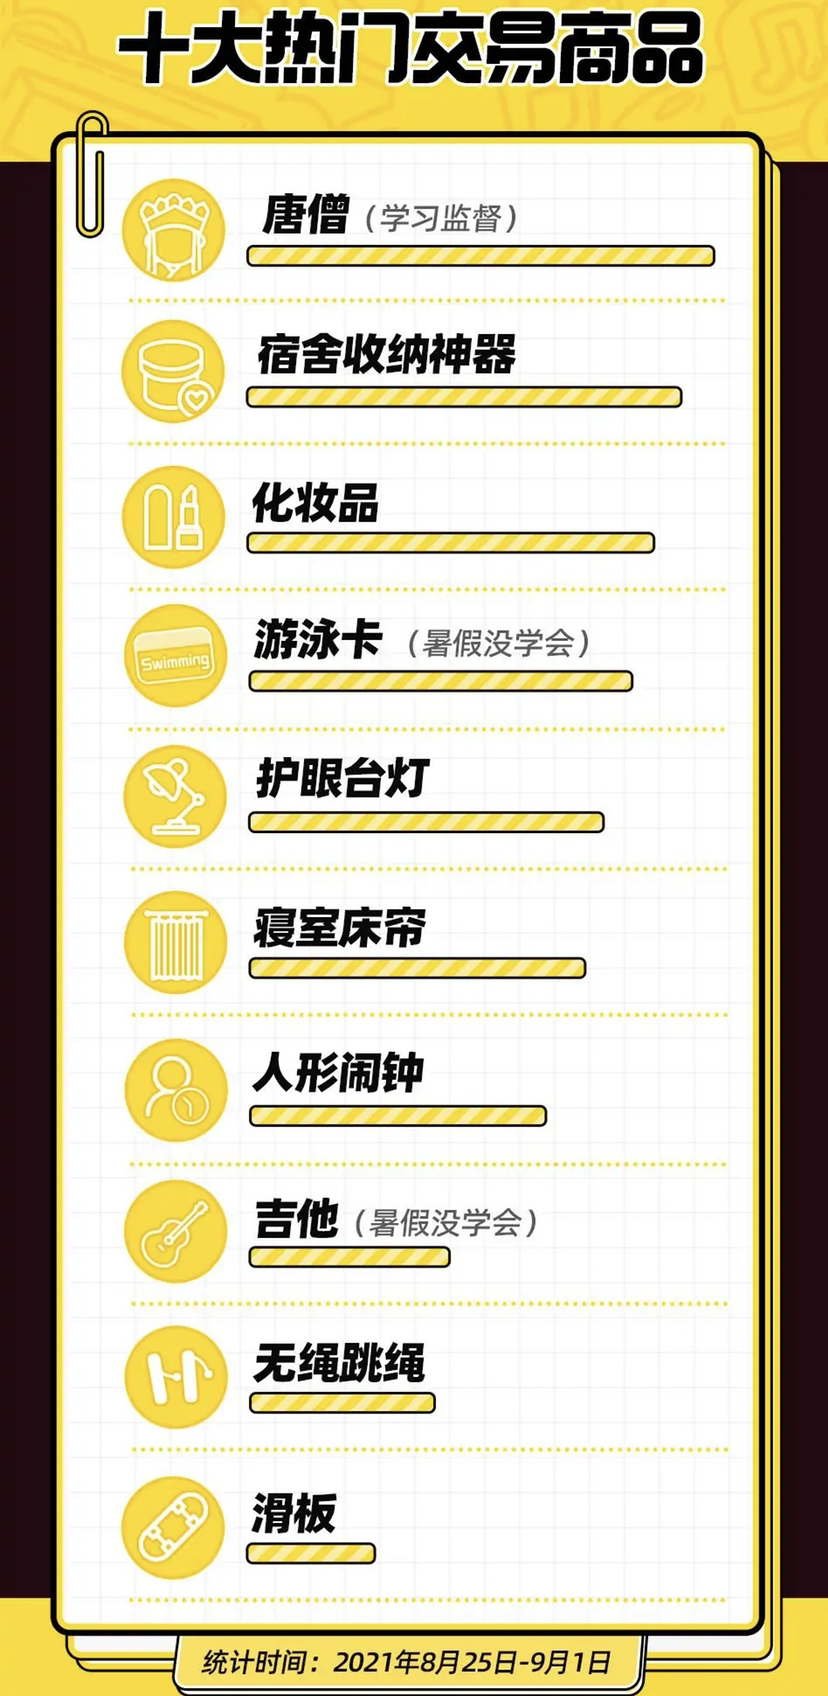 唐僧（学习监督）在开学季热门商品排行榜第一位。来源 网络截图